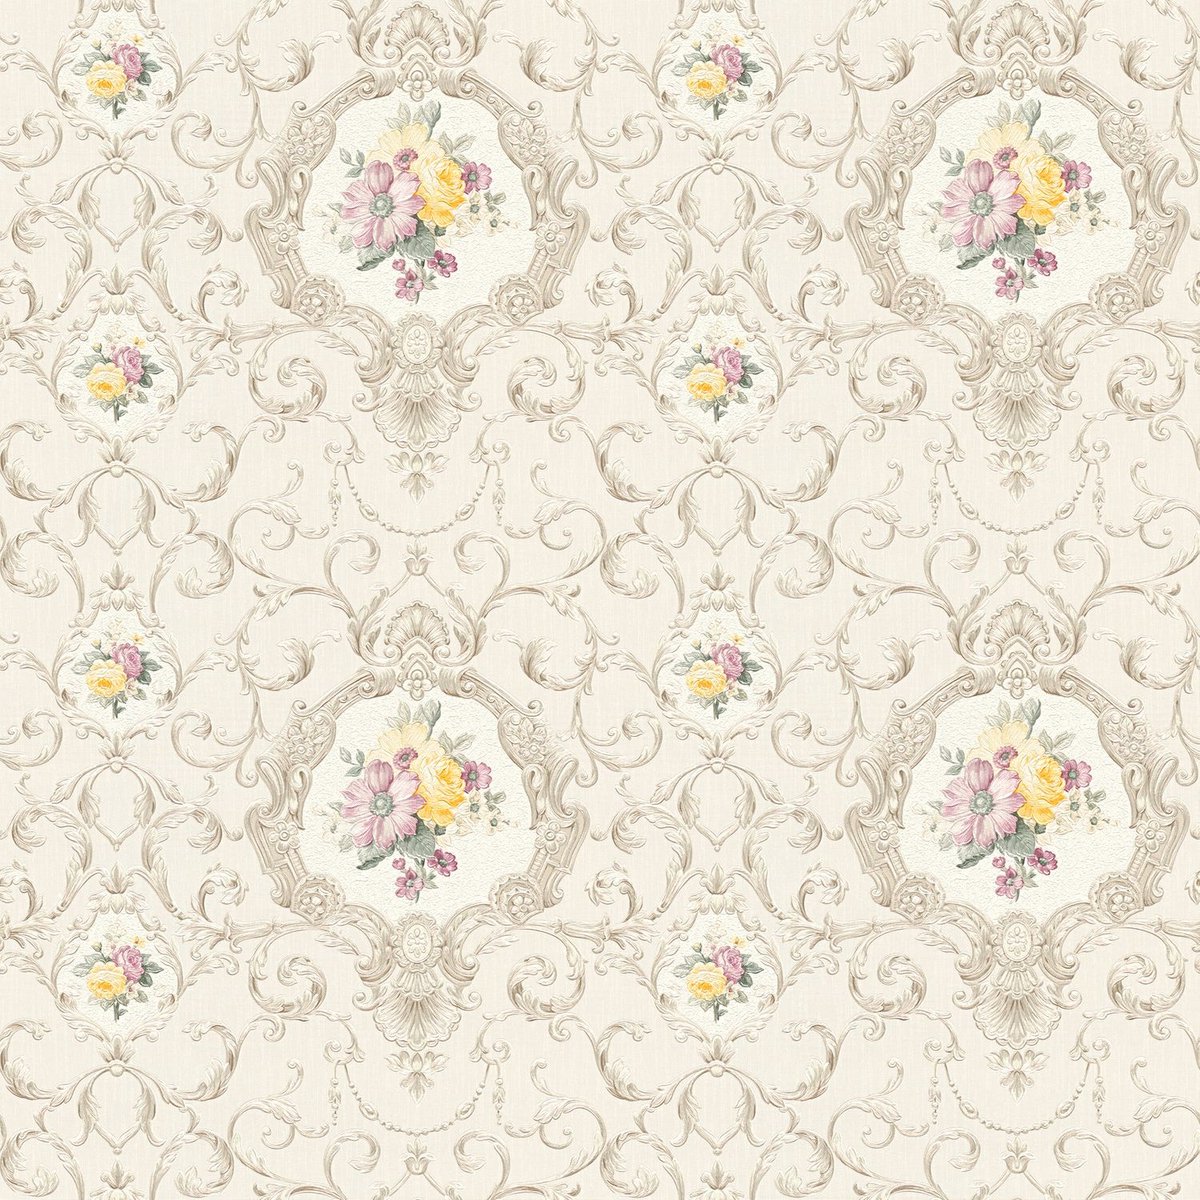 Barok behang Profhome 343912-GU vliesbehang licht gestructureerd in barok stijl mat beige grijs roze geel 5,33 m2